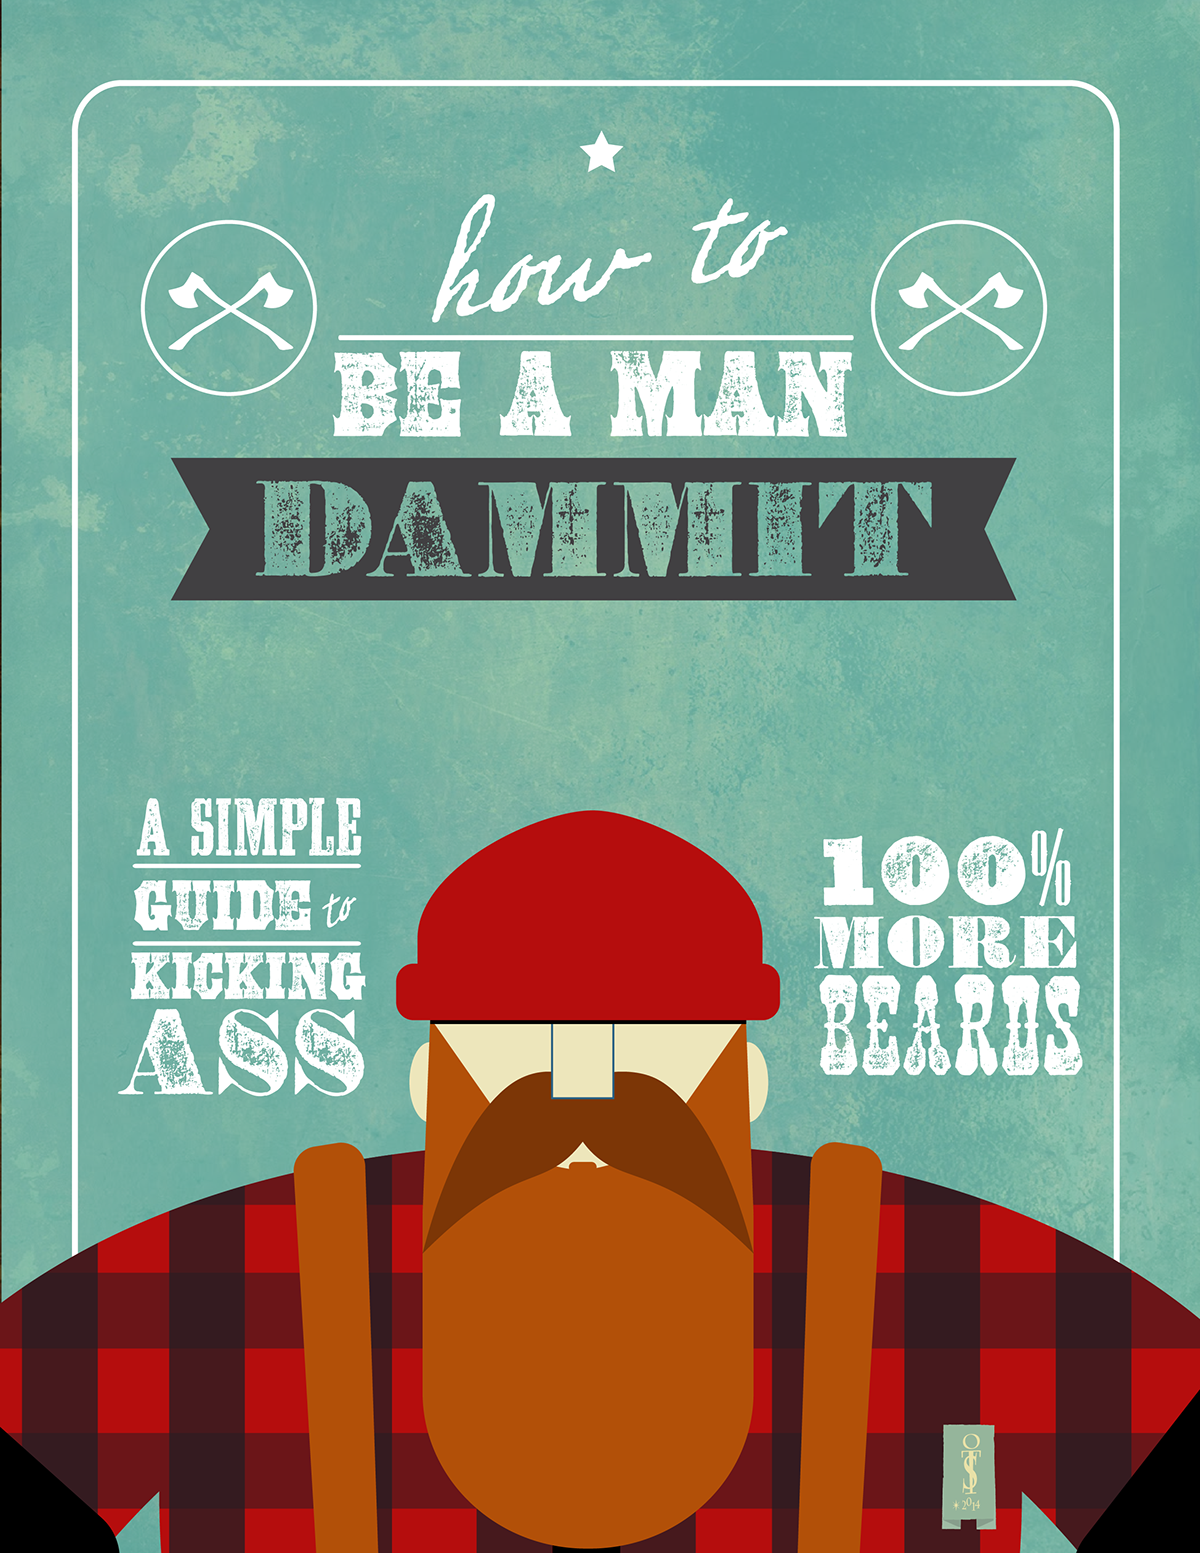 beard man Hipster lumberjack manly axe trendy